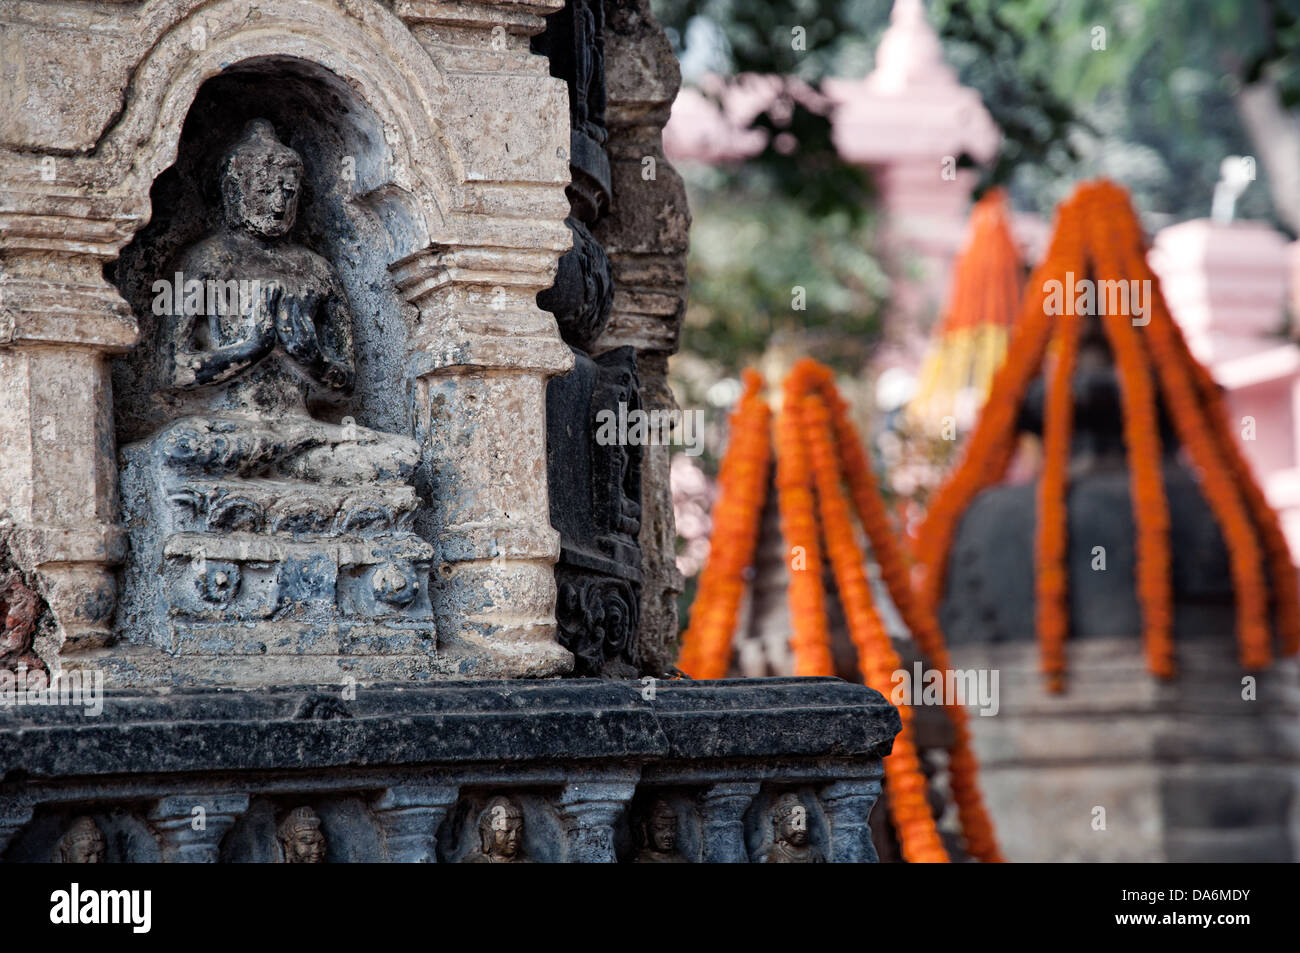 Budha sculpture. Bodhgaya, Bihar, India Stock Photo